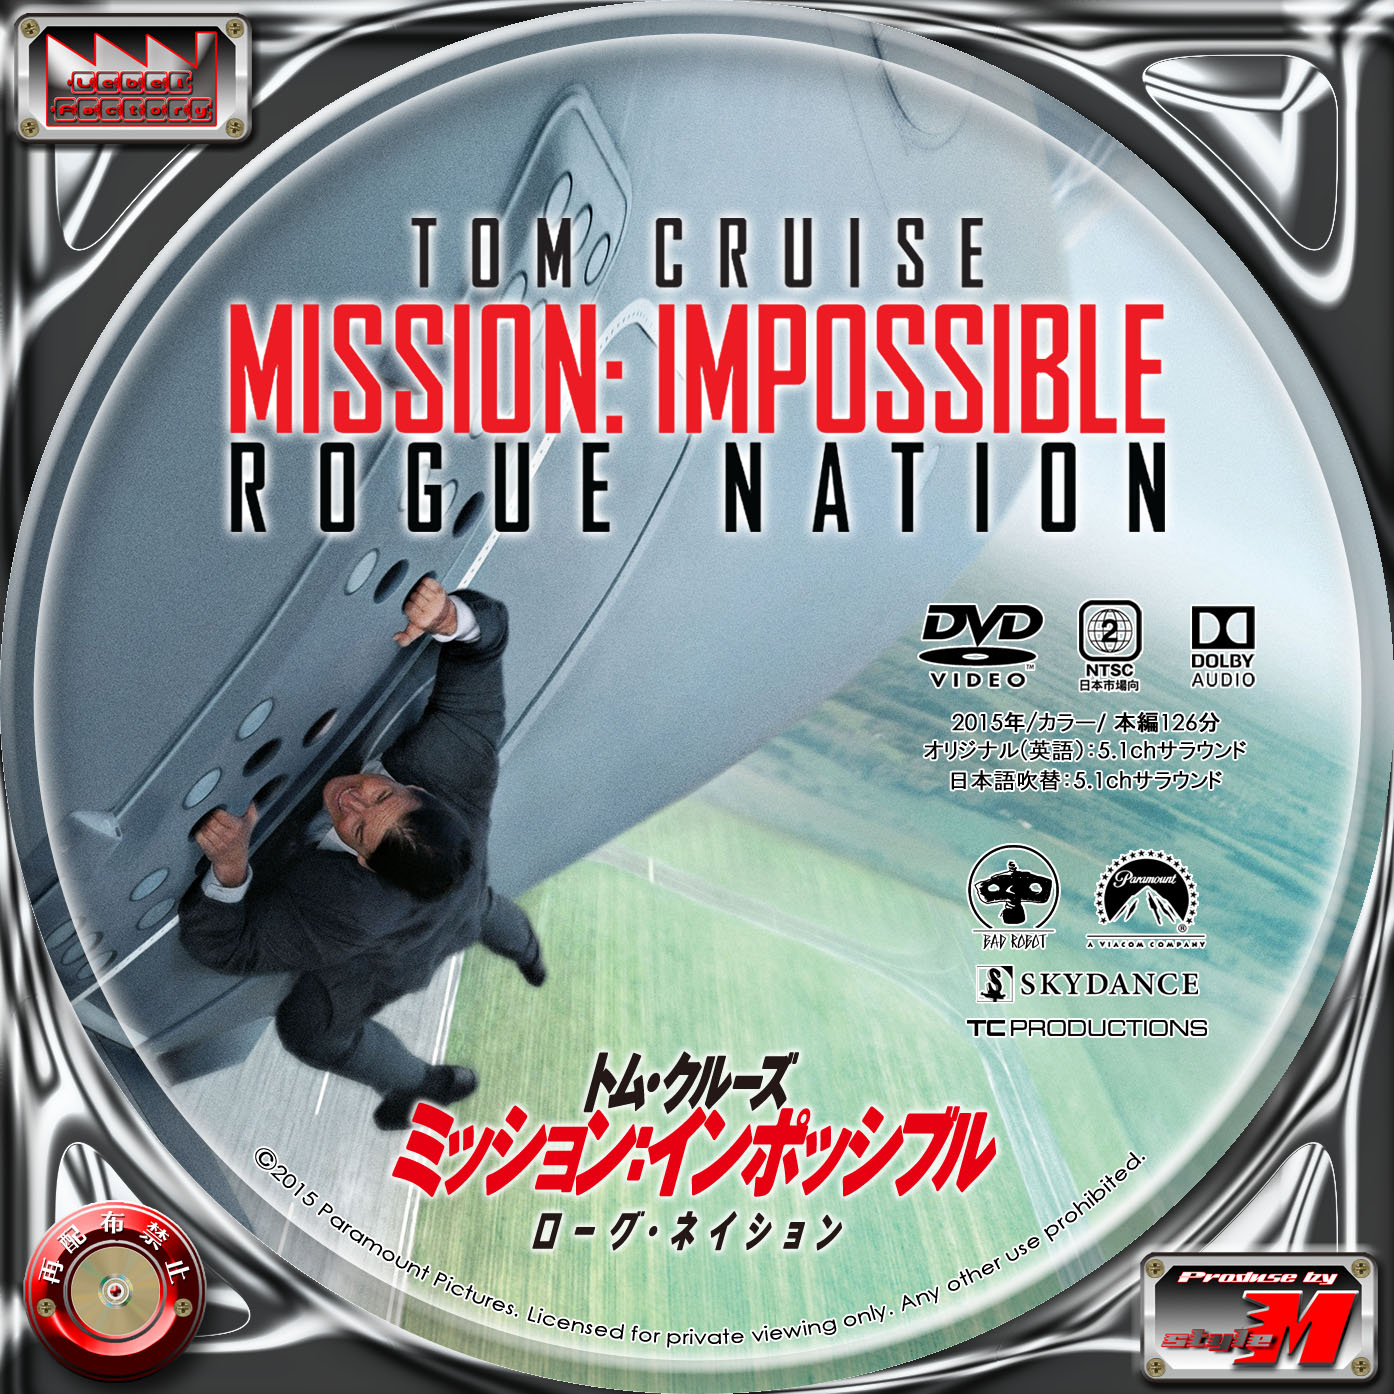 ミッション インポッシブル ローグネーション Mission Impossible Rogue Nation Label Factory M Style 自作dvd レーベル ラベル